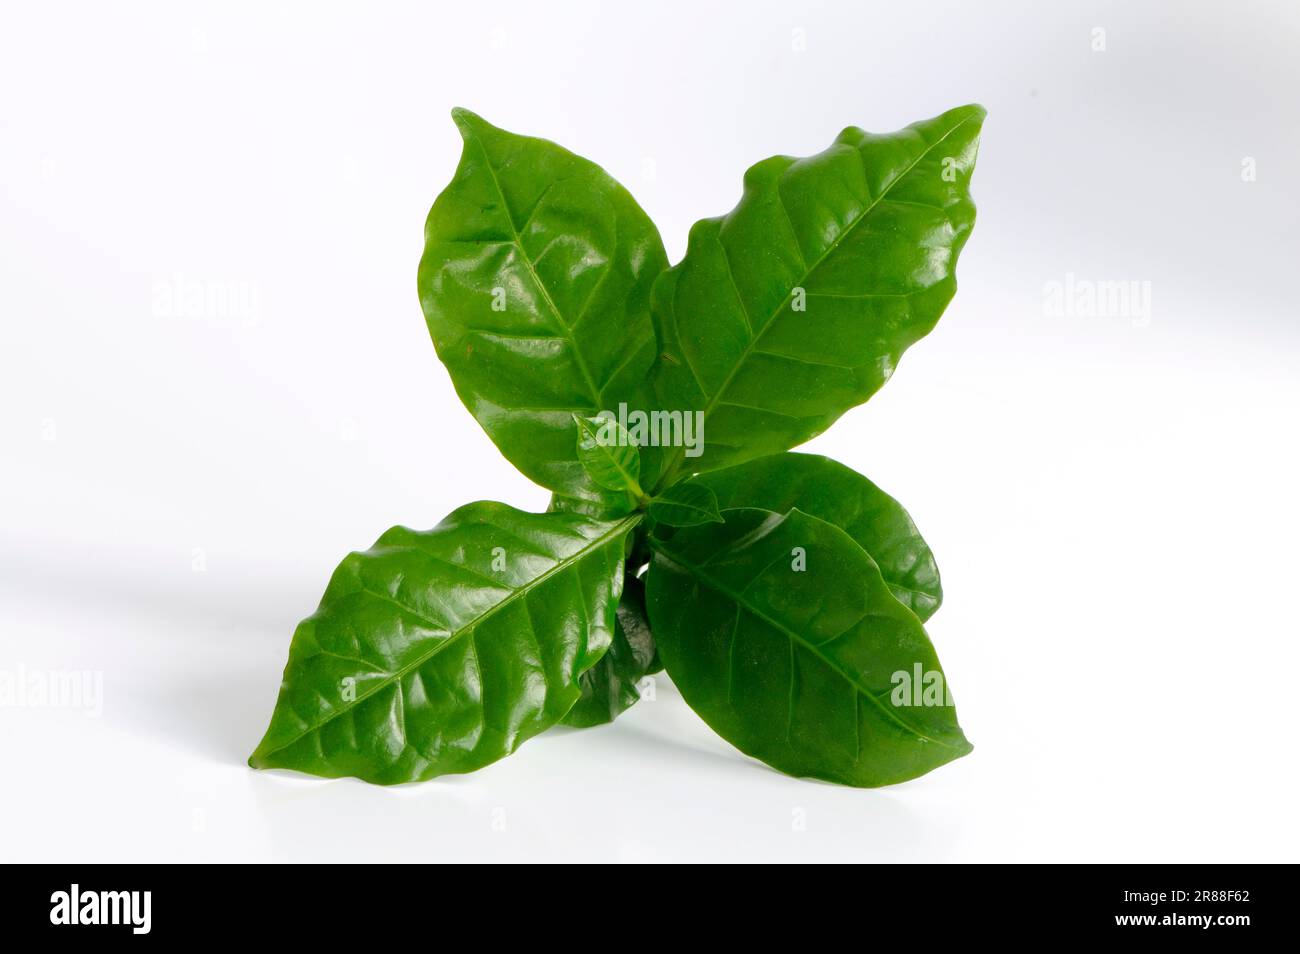 Coffee plant (Coffea arabica) Stock Photo